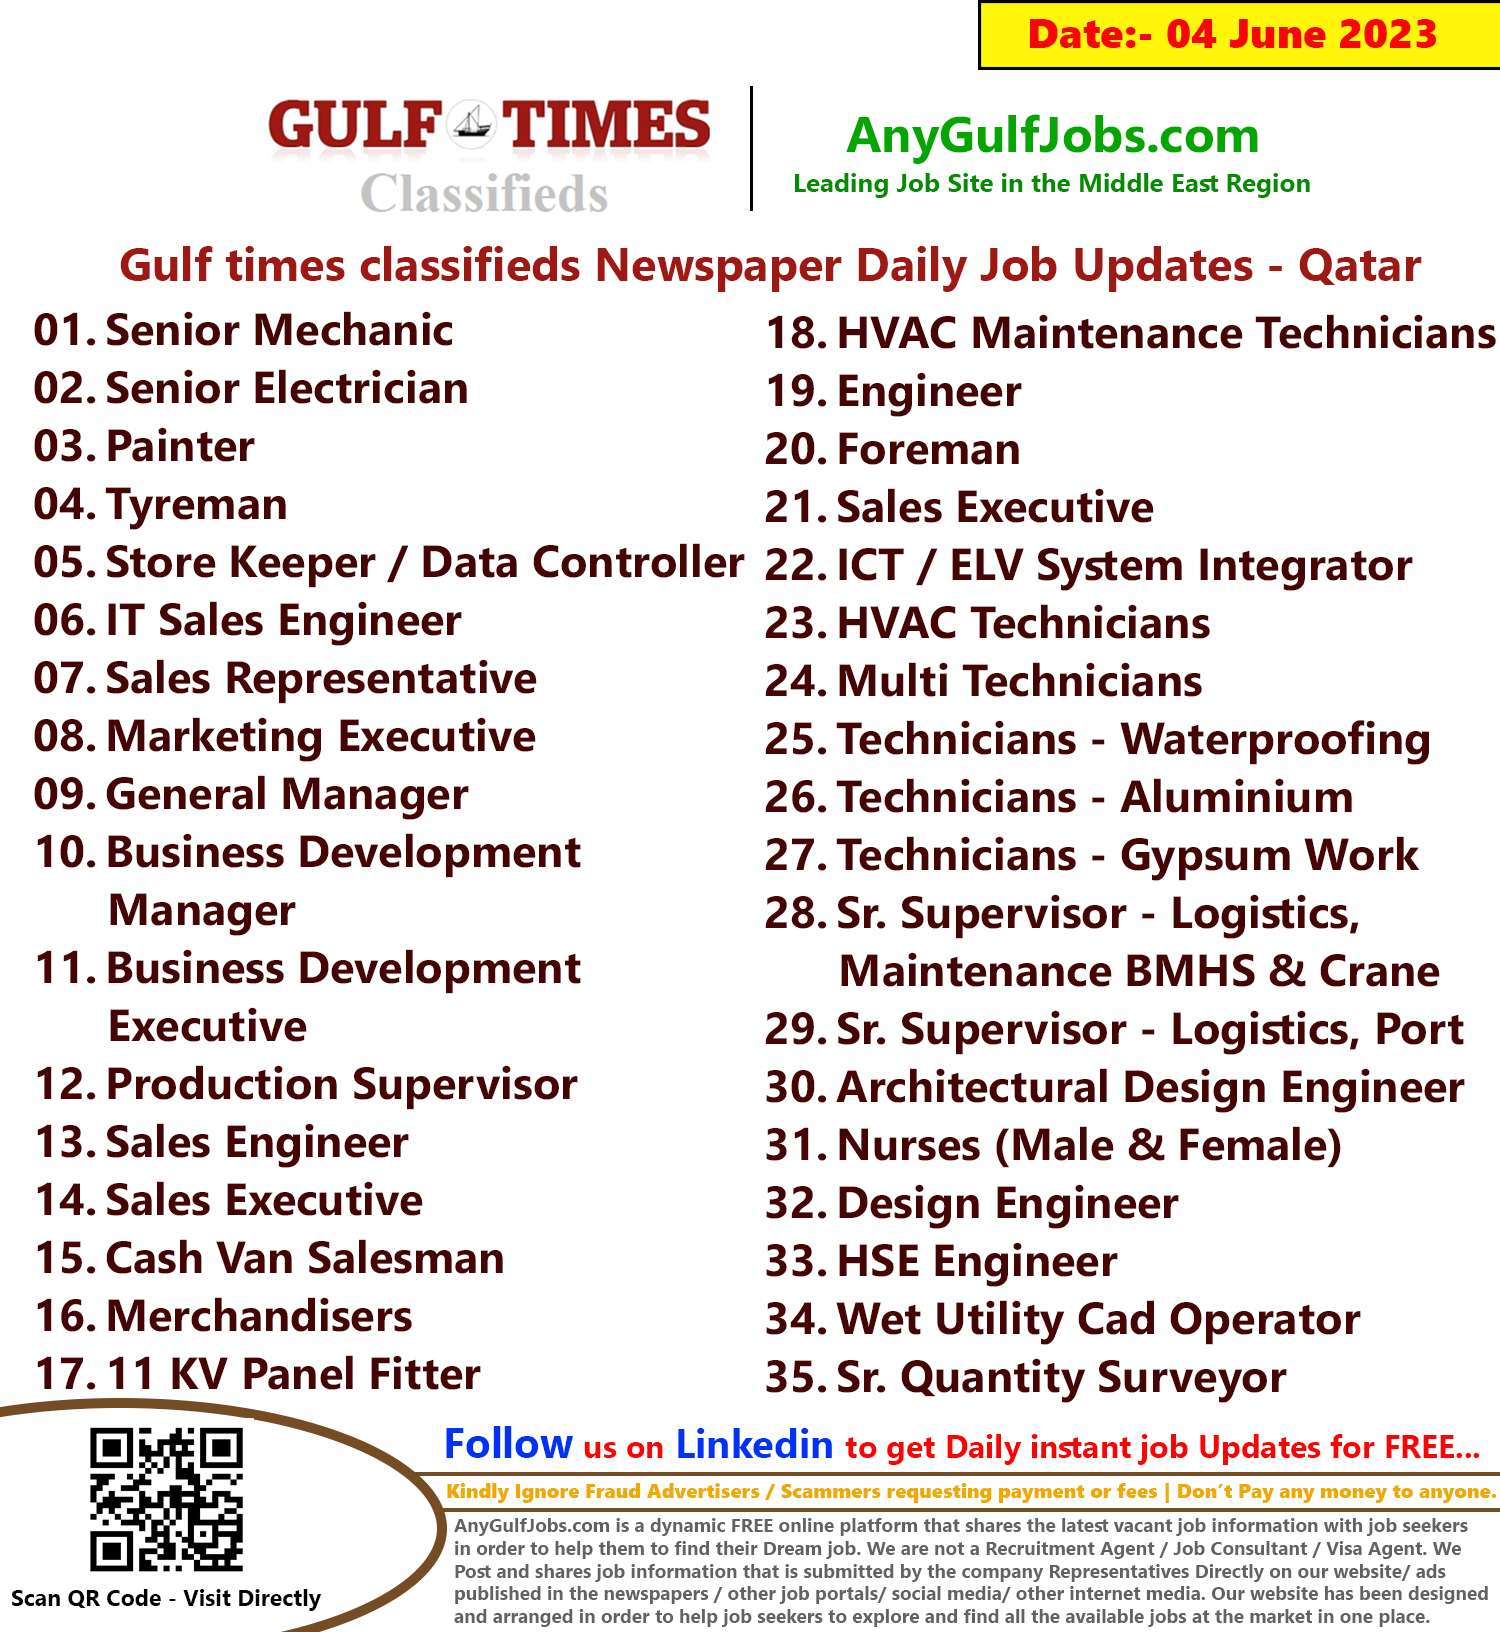 Gulf times classifieds Job Vacancies Qatar - 04 June 2023